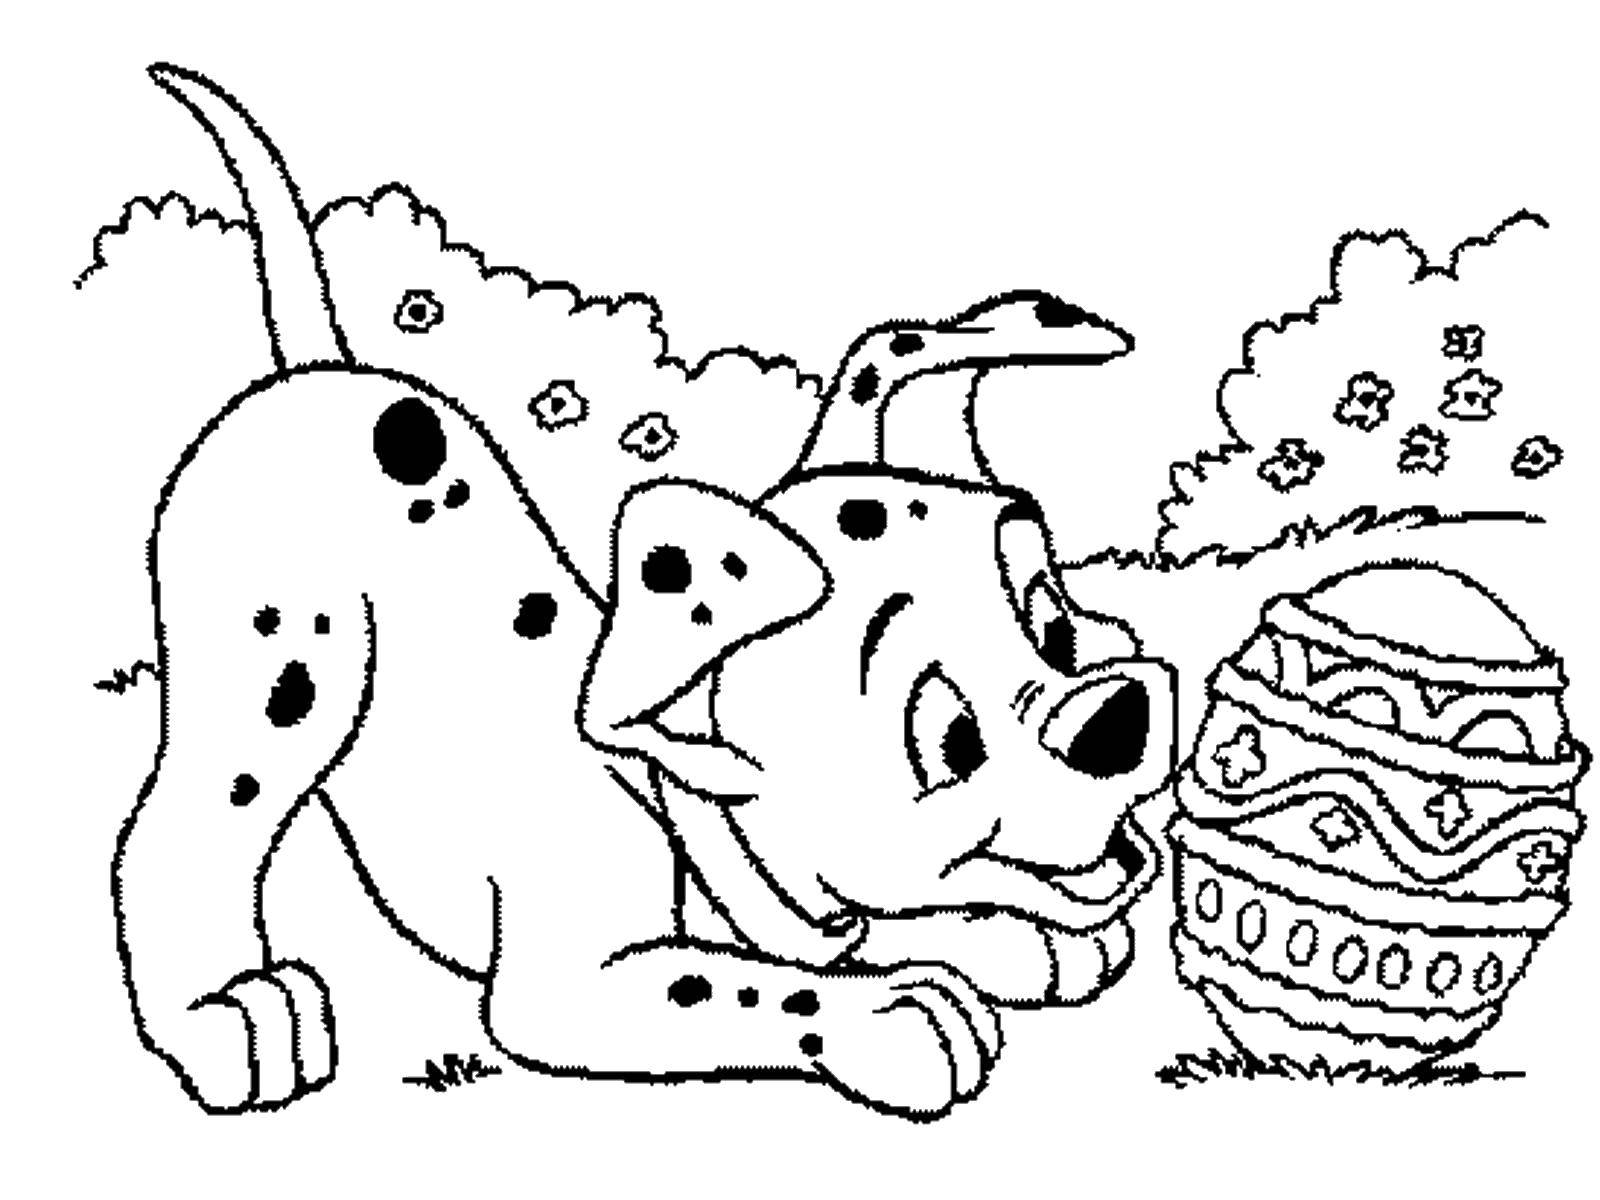 Coloring Dalmatians Easter egg. Category 101 Dalmatians. Tags:  101 Dalmatians, Disney, cartoon.